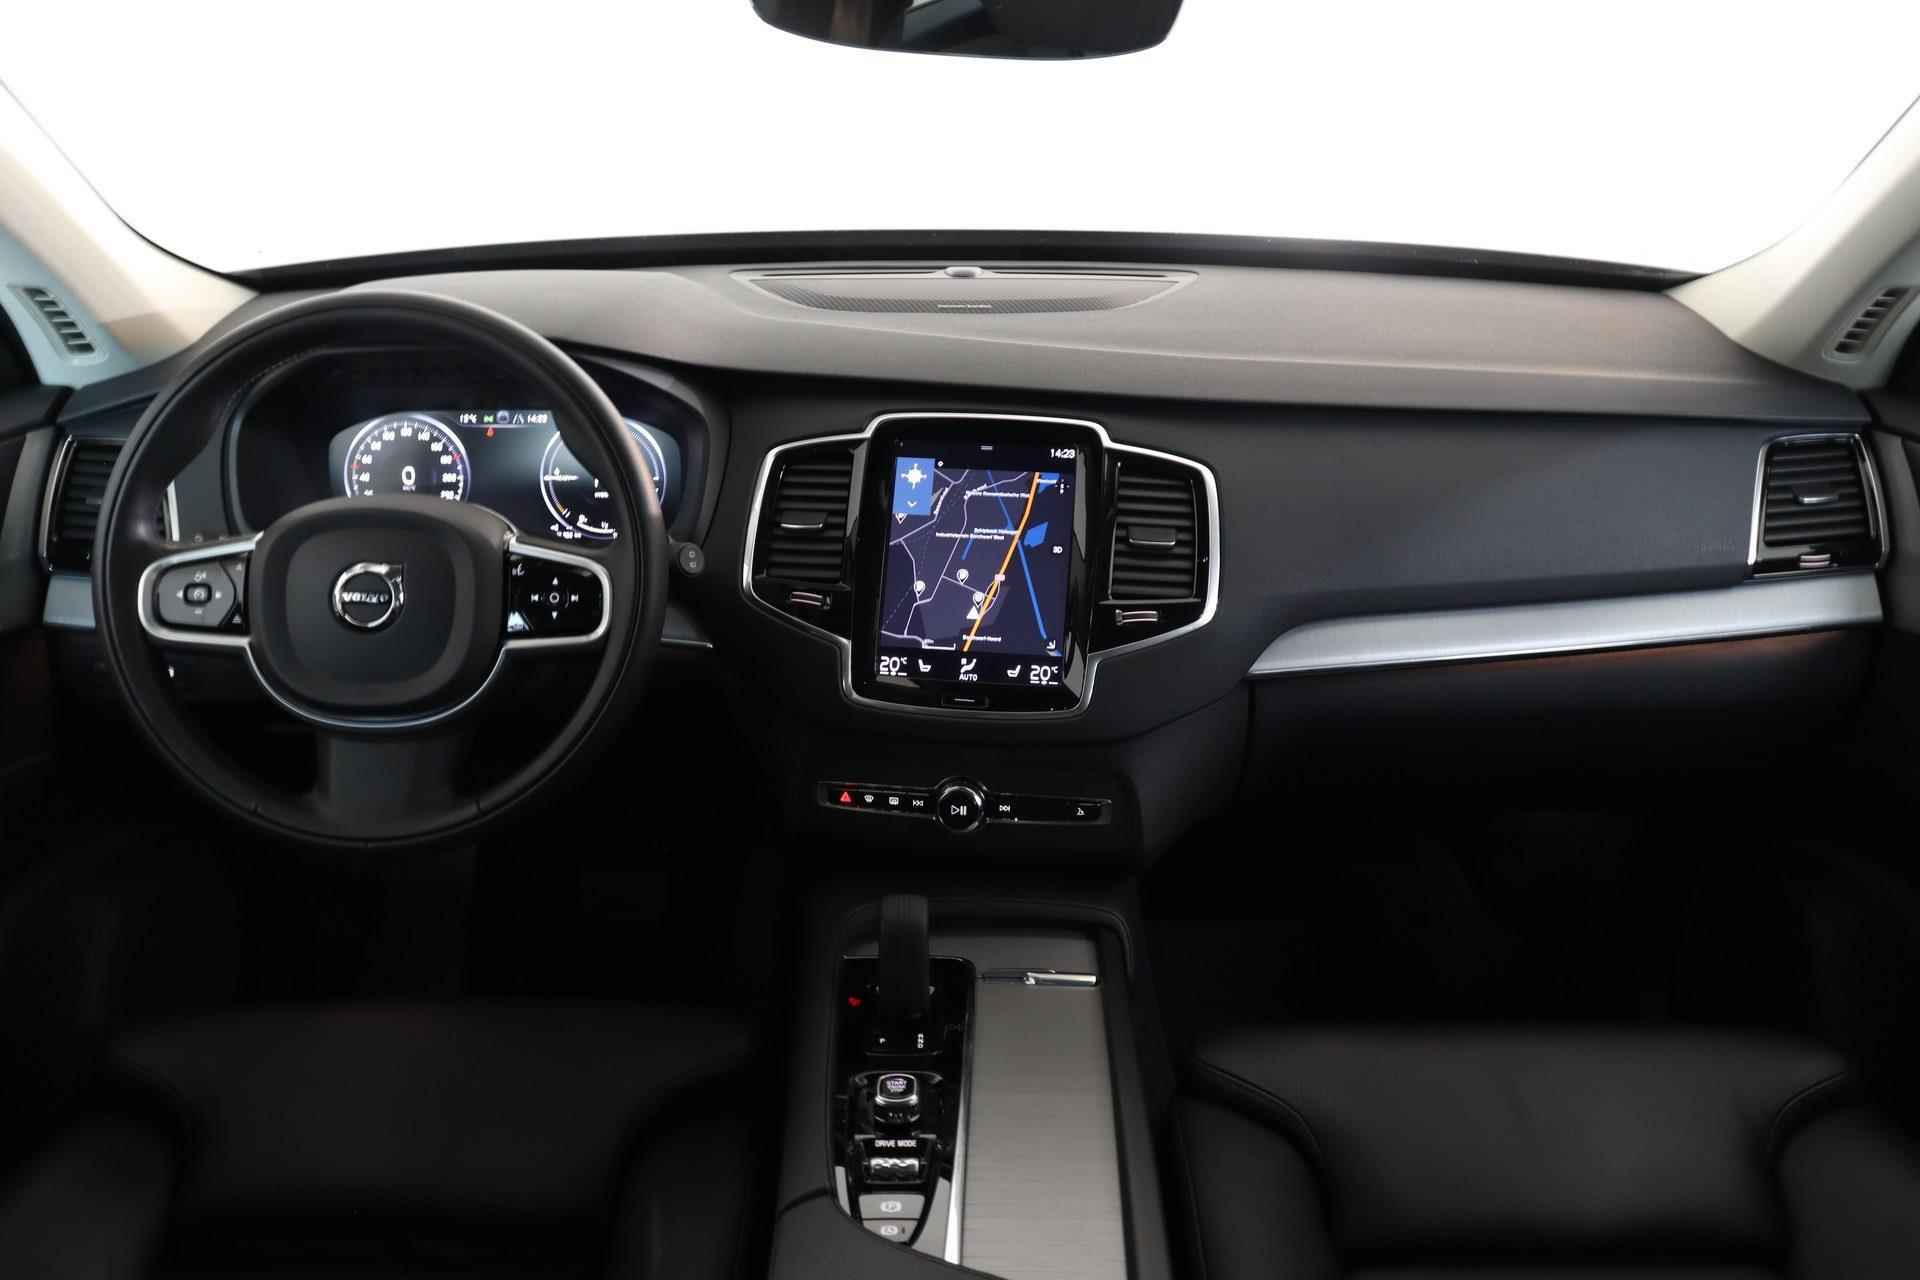 Volvo XC90 T8 Recharge AWD R-Design - IntelliSafe Assist & Surround - Harman/Kardon audio - Adaptieve LED koplampen - Parkeercamera achter - Elektr. bedienb. voorstoelen met geheugen - Climate-Control 4-zone - Apple Carplay & Android Auto - Parkeersensoren voor & achter - Verwarmde voorstoelen & stuur - Draadloze tel. lader - Extra getint glas - 20' LMV - 26/29